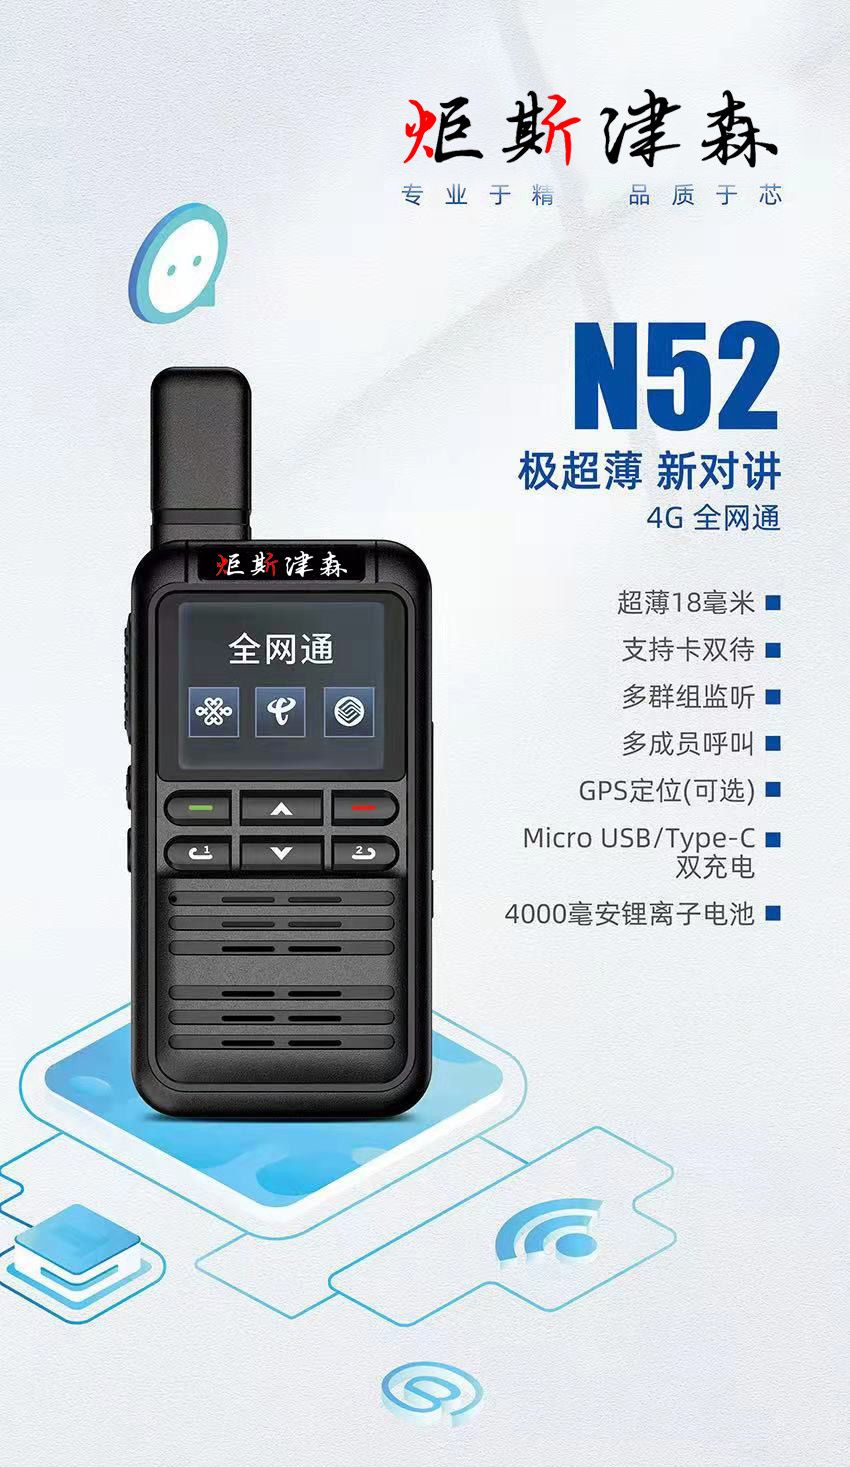 贵阳市 | N52型薄款全网通插卡对讲机